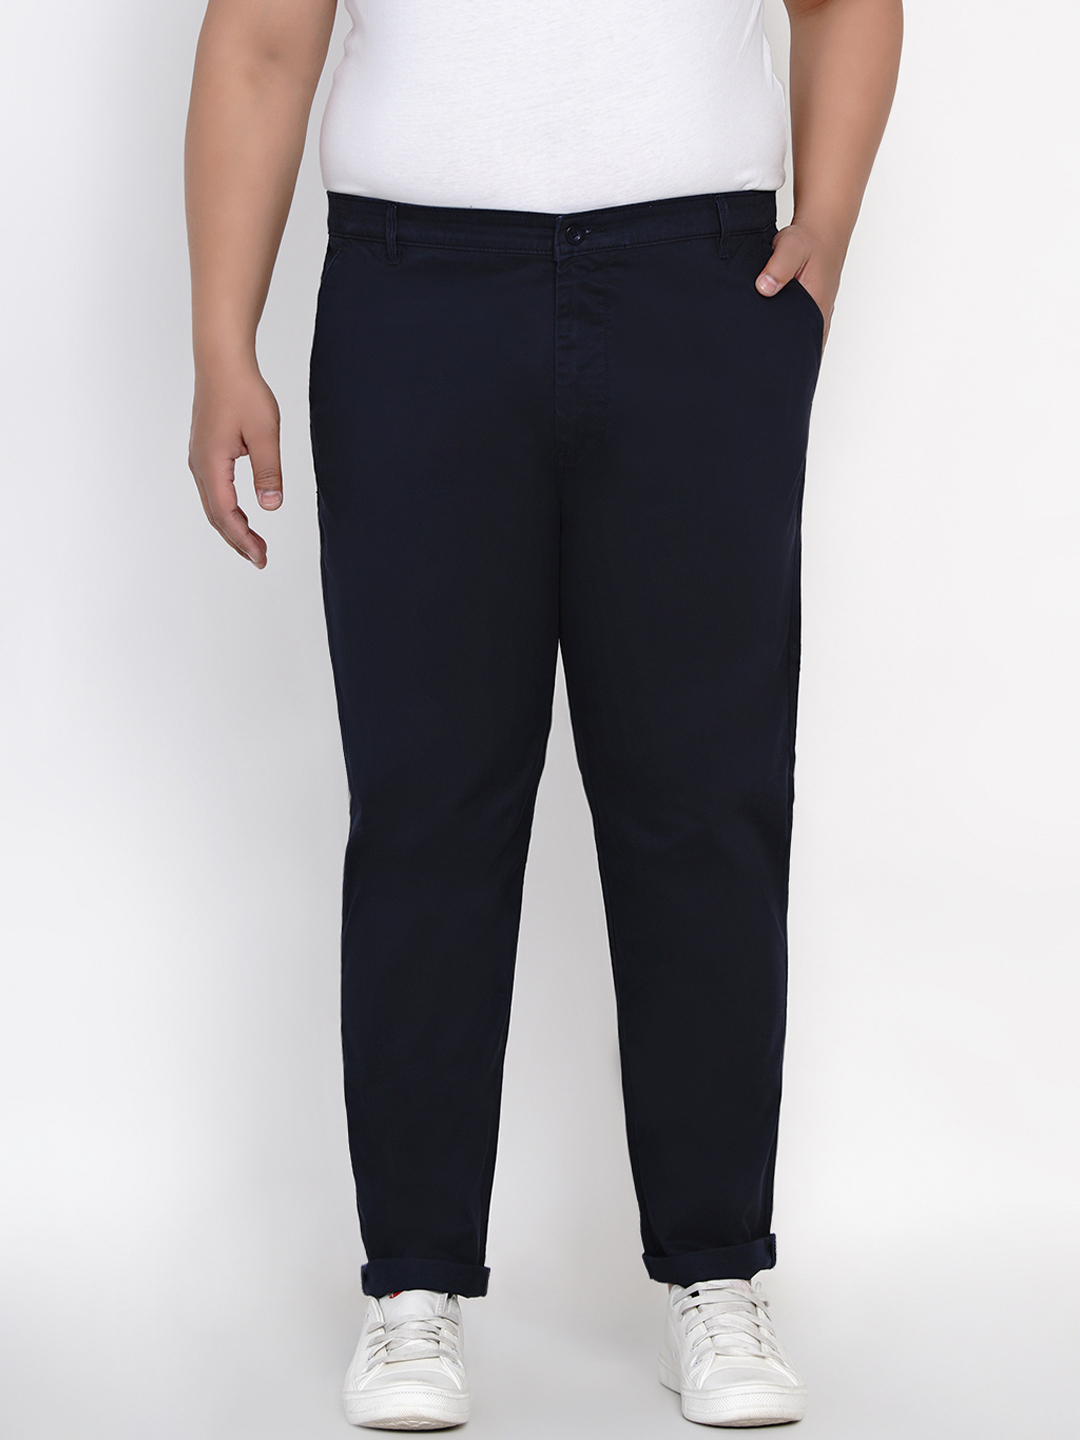 bottomwear/trousers/JPTR2161I/jptr2161i-1.jpg